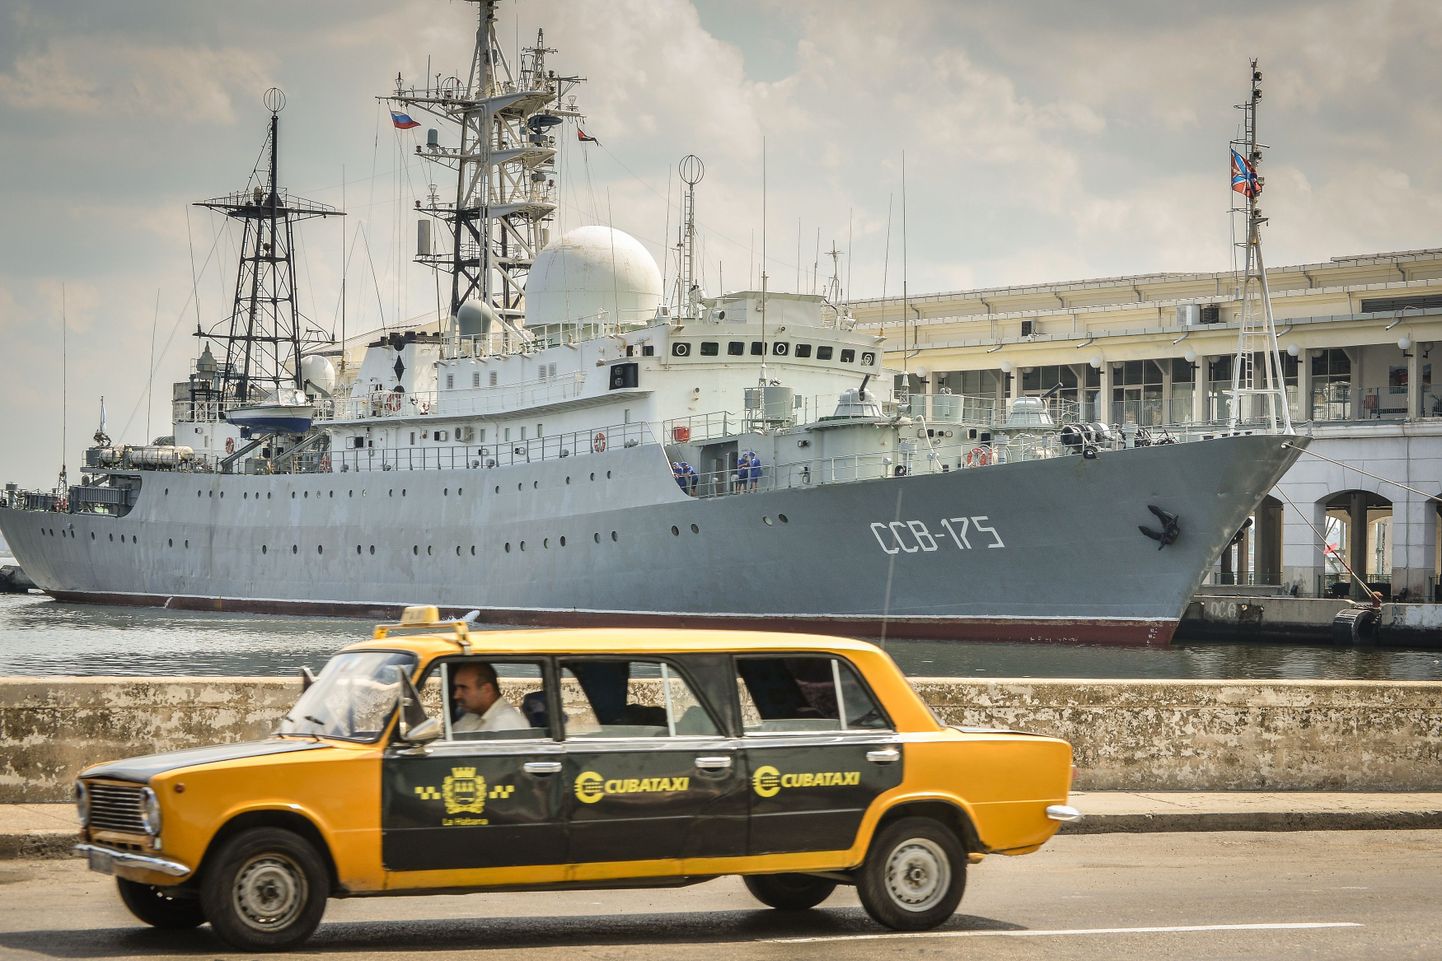 Luksuslik limusiintakso möödub Havanna sadamas Vene sõjalaevast Viktor Leonov 26. veebruaril 2014